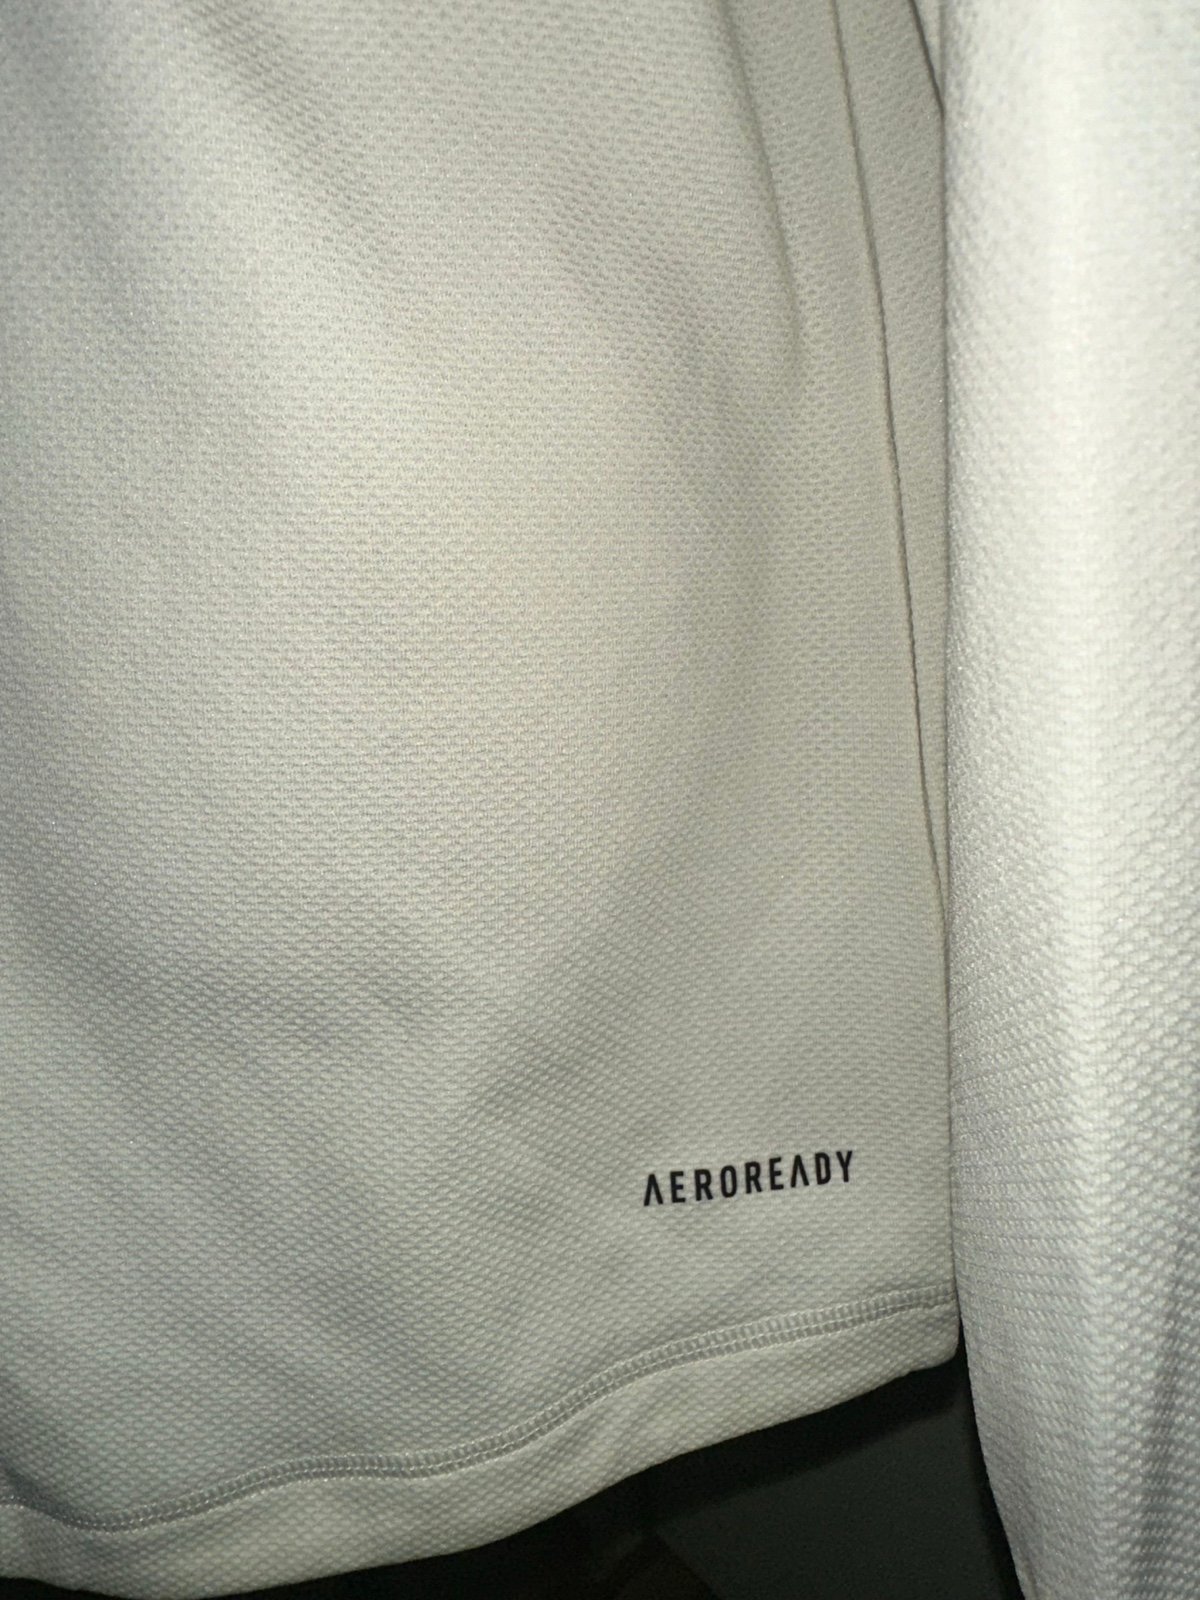 Personality Adidas Aeroready Hoodie Lightweight Thumbholes Shirt pNsmqvASF no tax